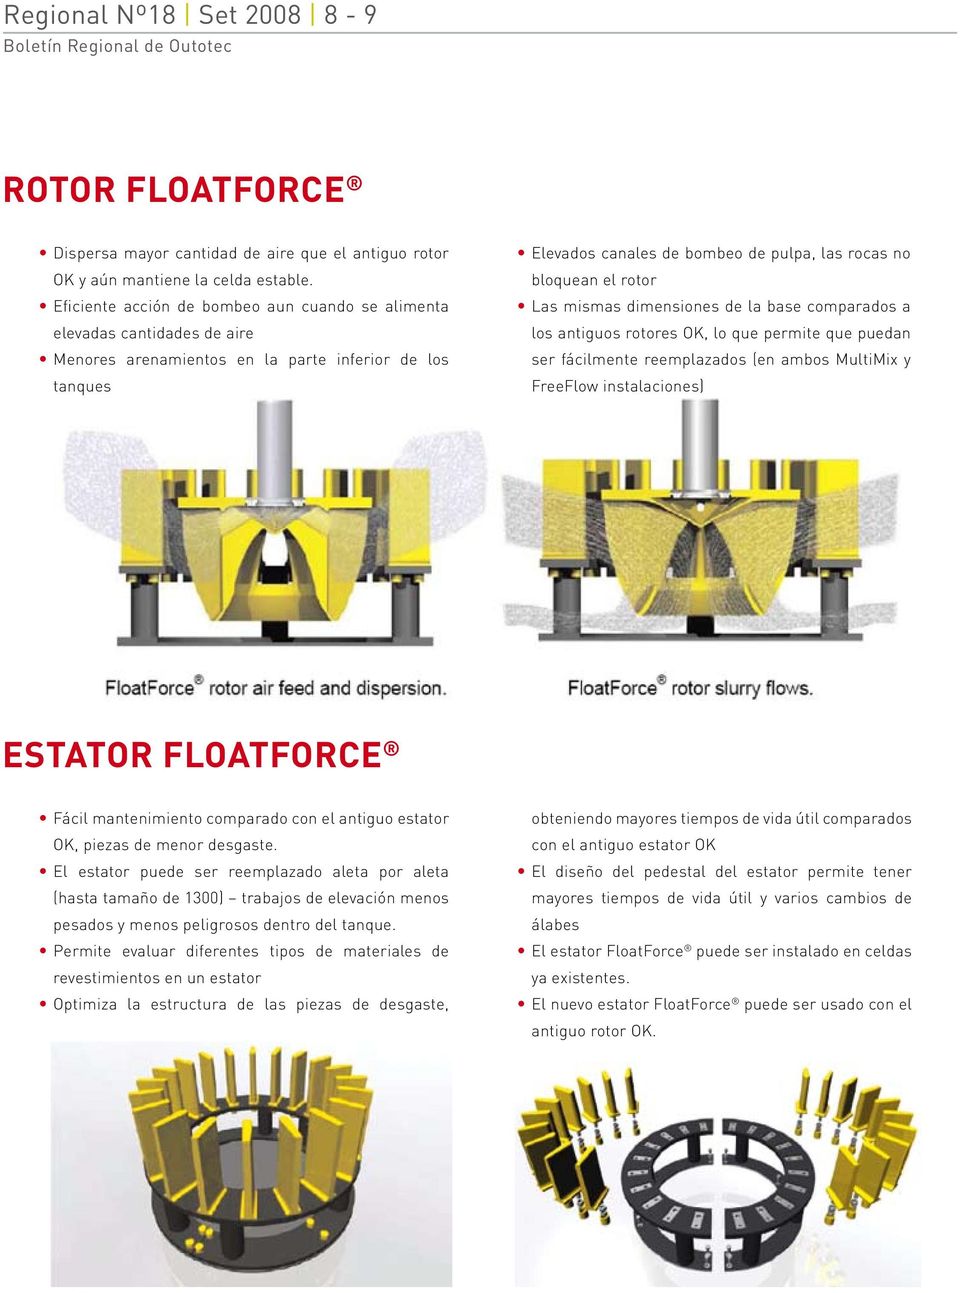 rotor Las mismas dimensiones de la base comparados a los antiguos rotores OK, lo que permite que puedan ser fácilmente reemplazados (en ambos MultiMix y FreeFlow instalaciones) ESTATOR FLOATFORCE